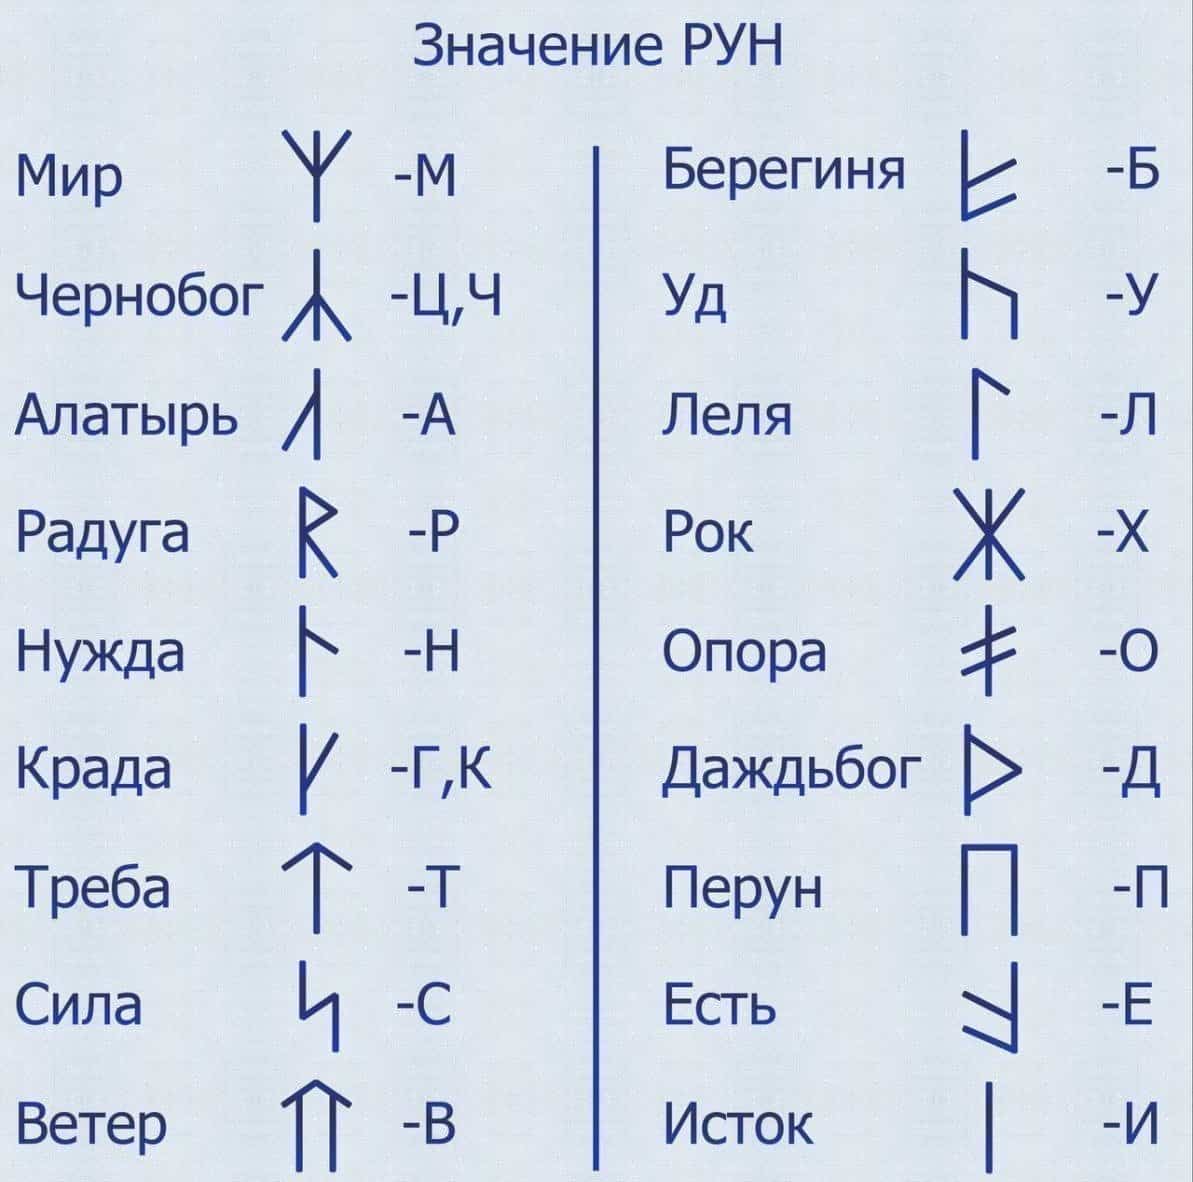 Значения славянских рун и их толкования